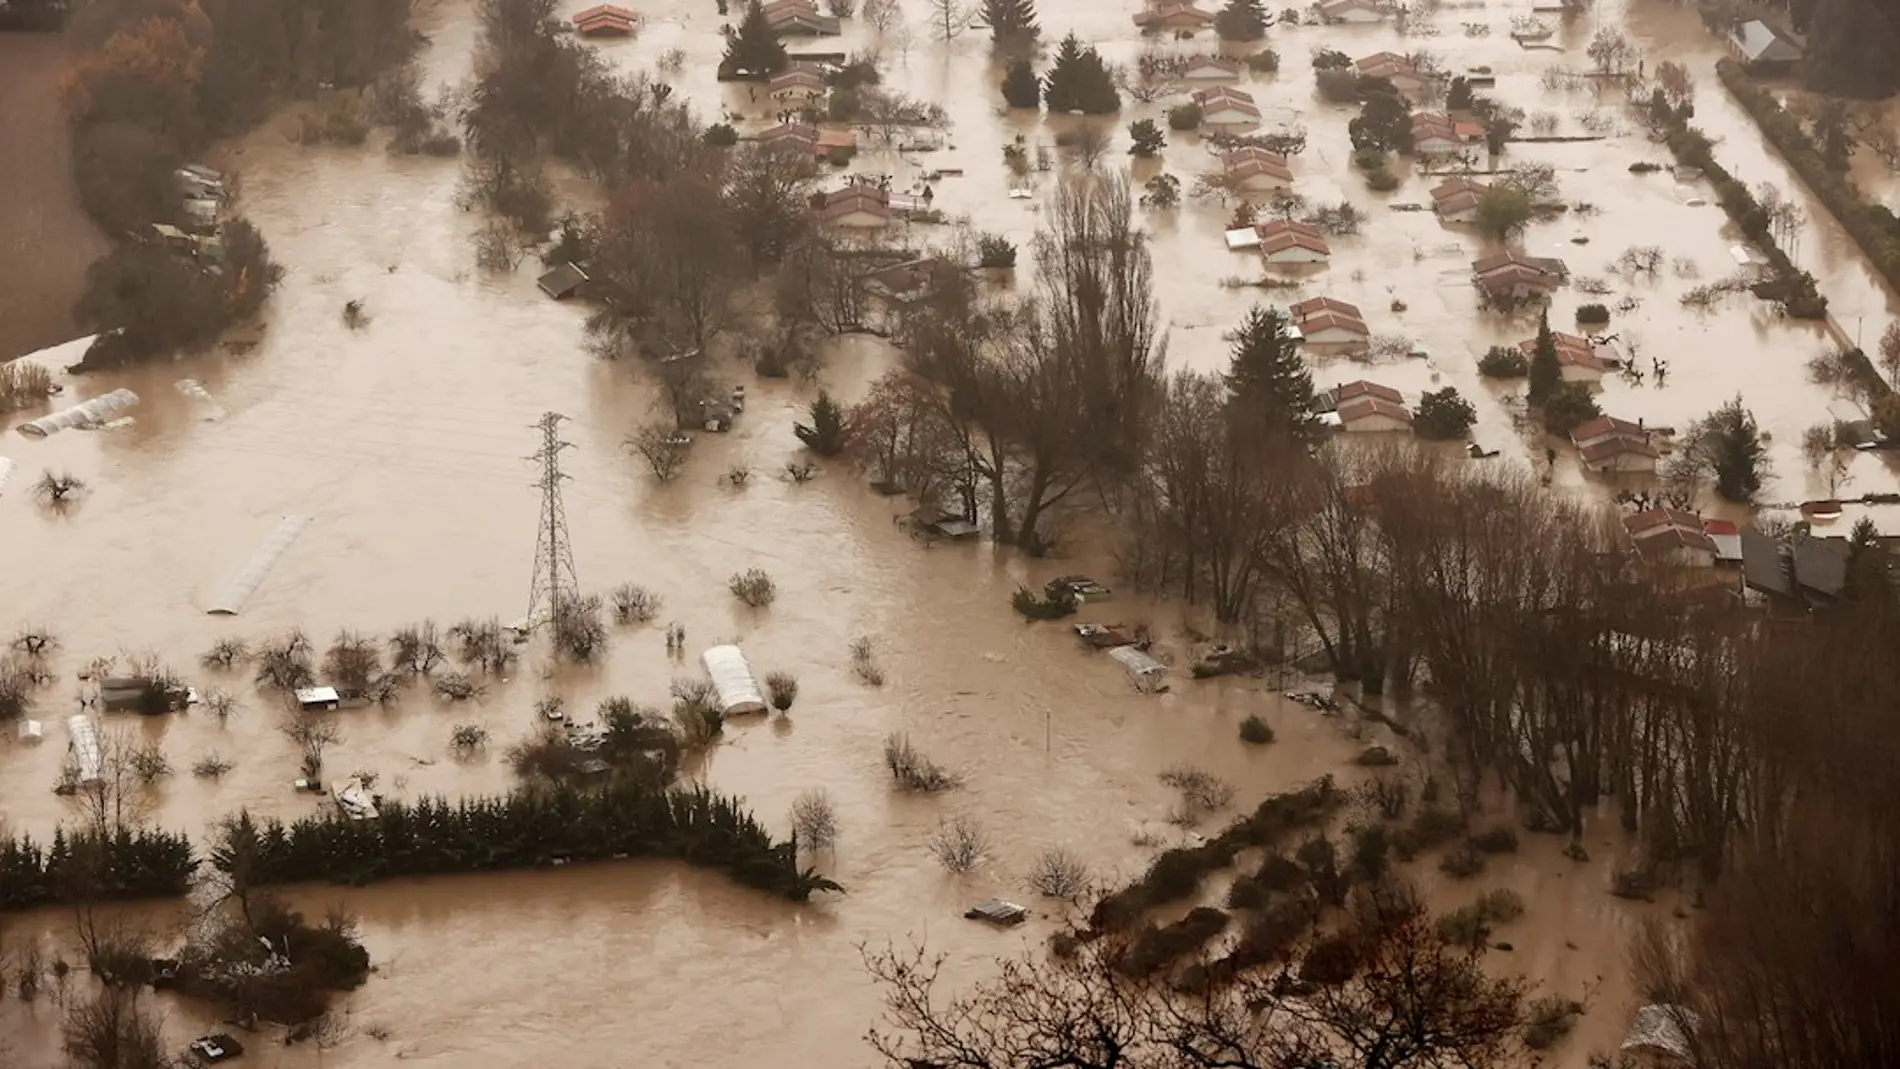 Vista aérea de las inundaciones ocasionadas por el desbordamiento río Arga a su paso por Huarte, Villava y Burlada en Navarra, este viernes.